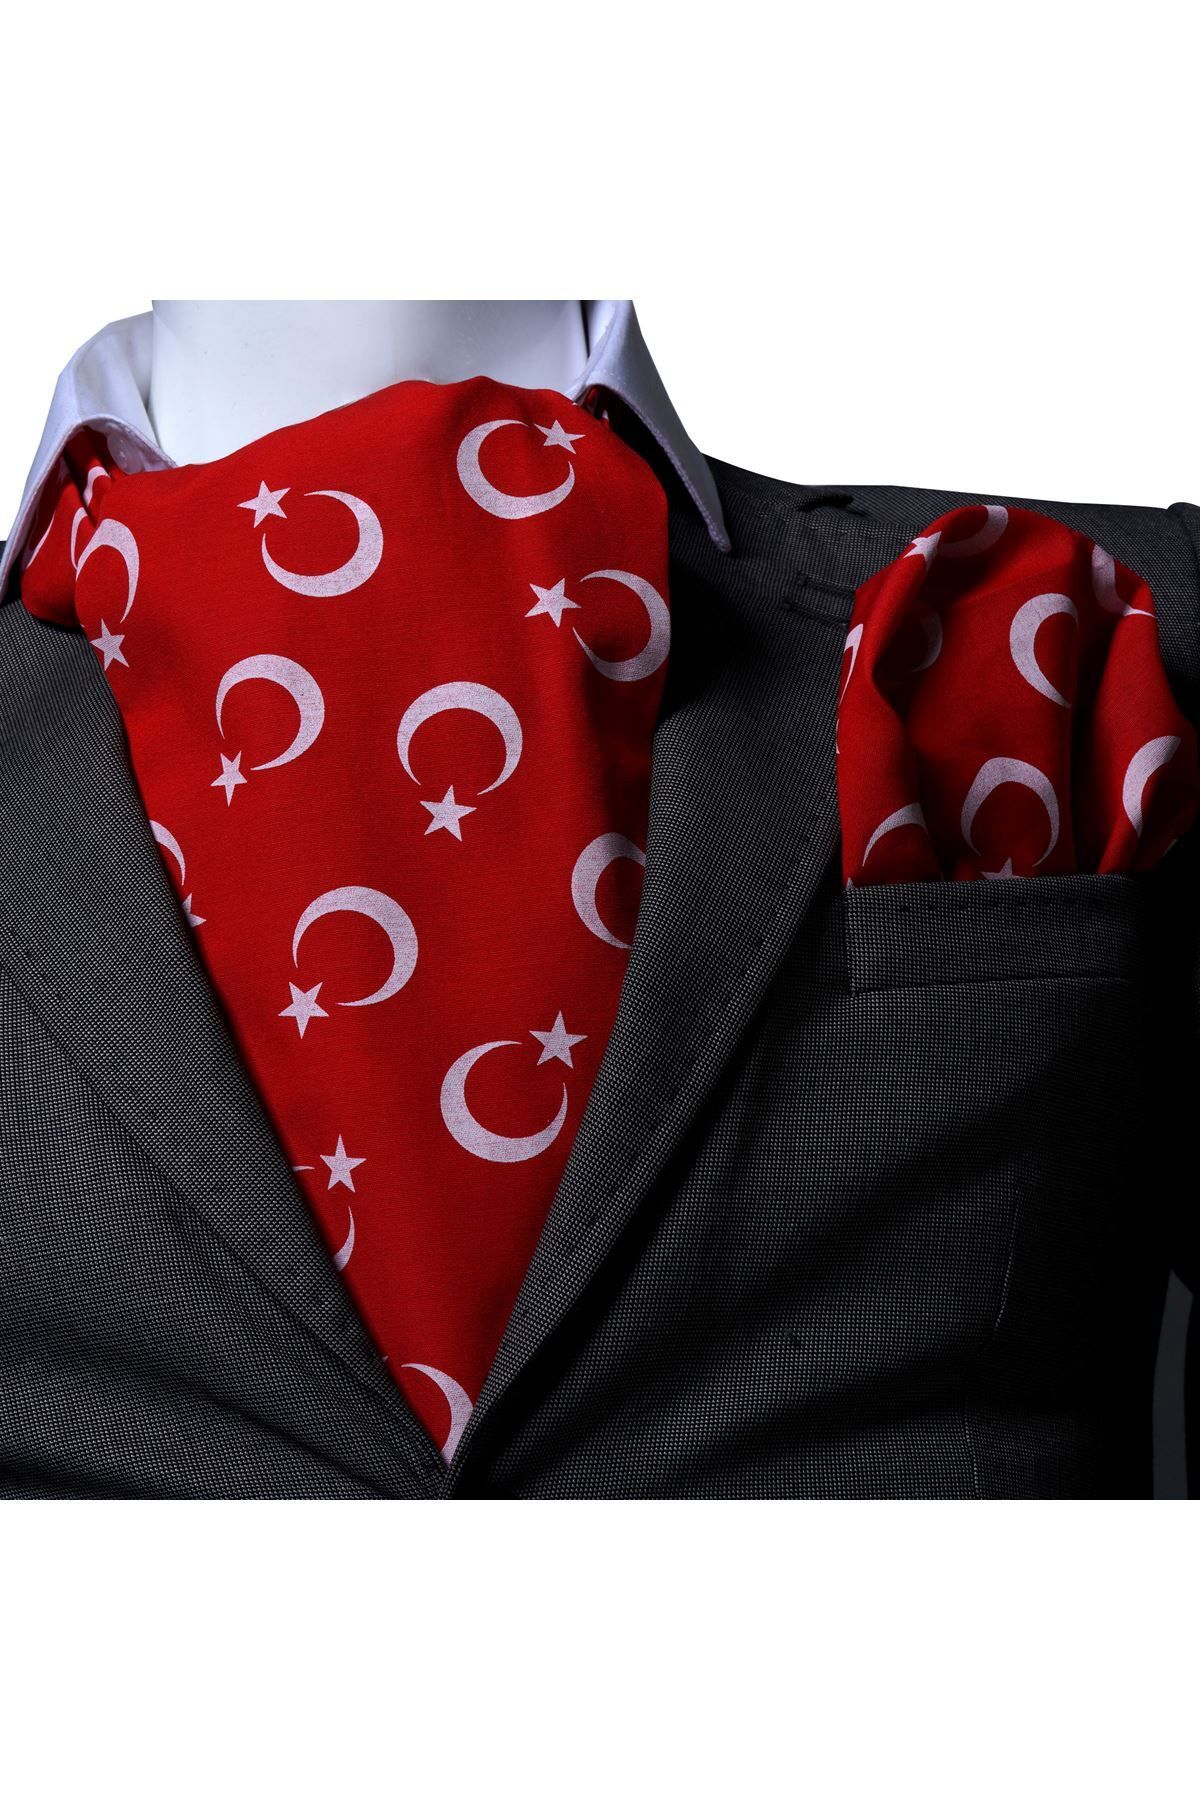 Exve Exclusive Kırmızı üzerine Beyaz Ay Yıldız Baskılı Türk Bayraklı Pamuk Fular Mendil Seti